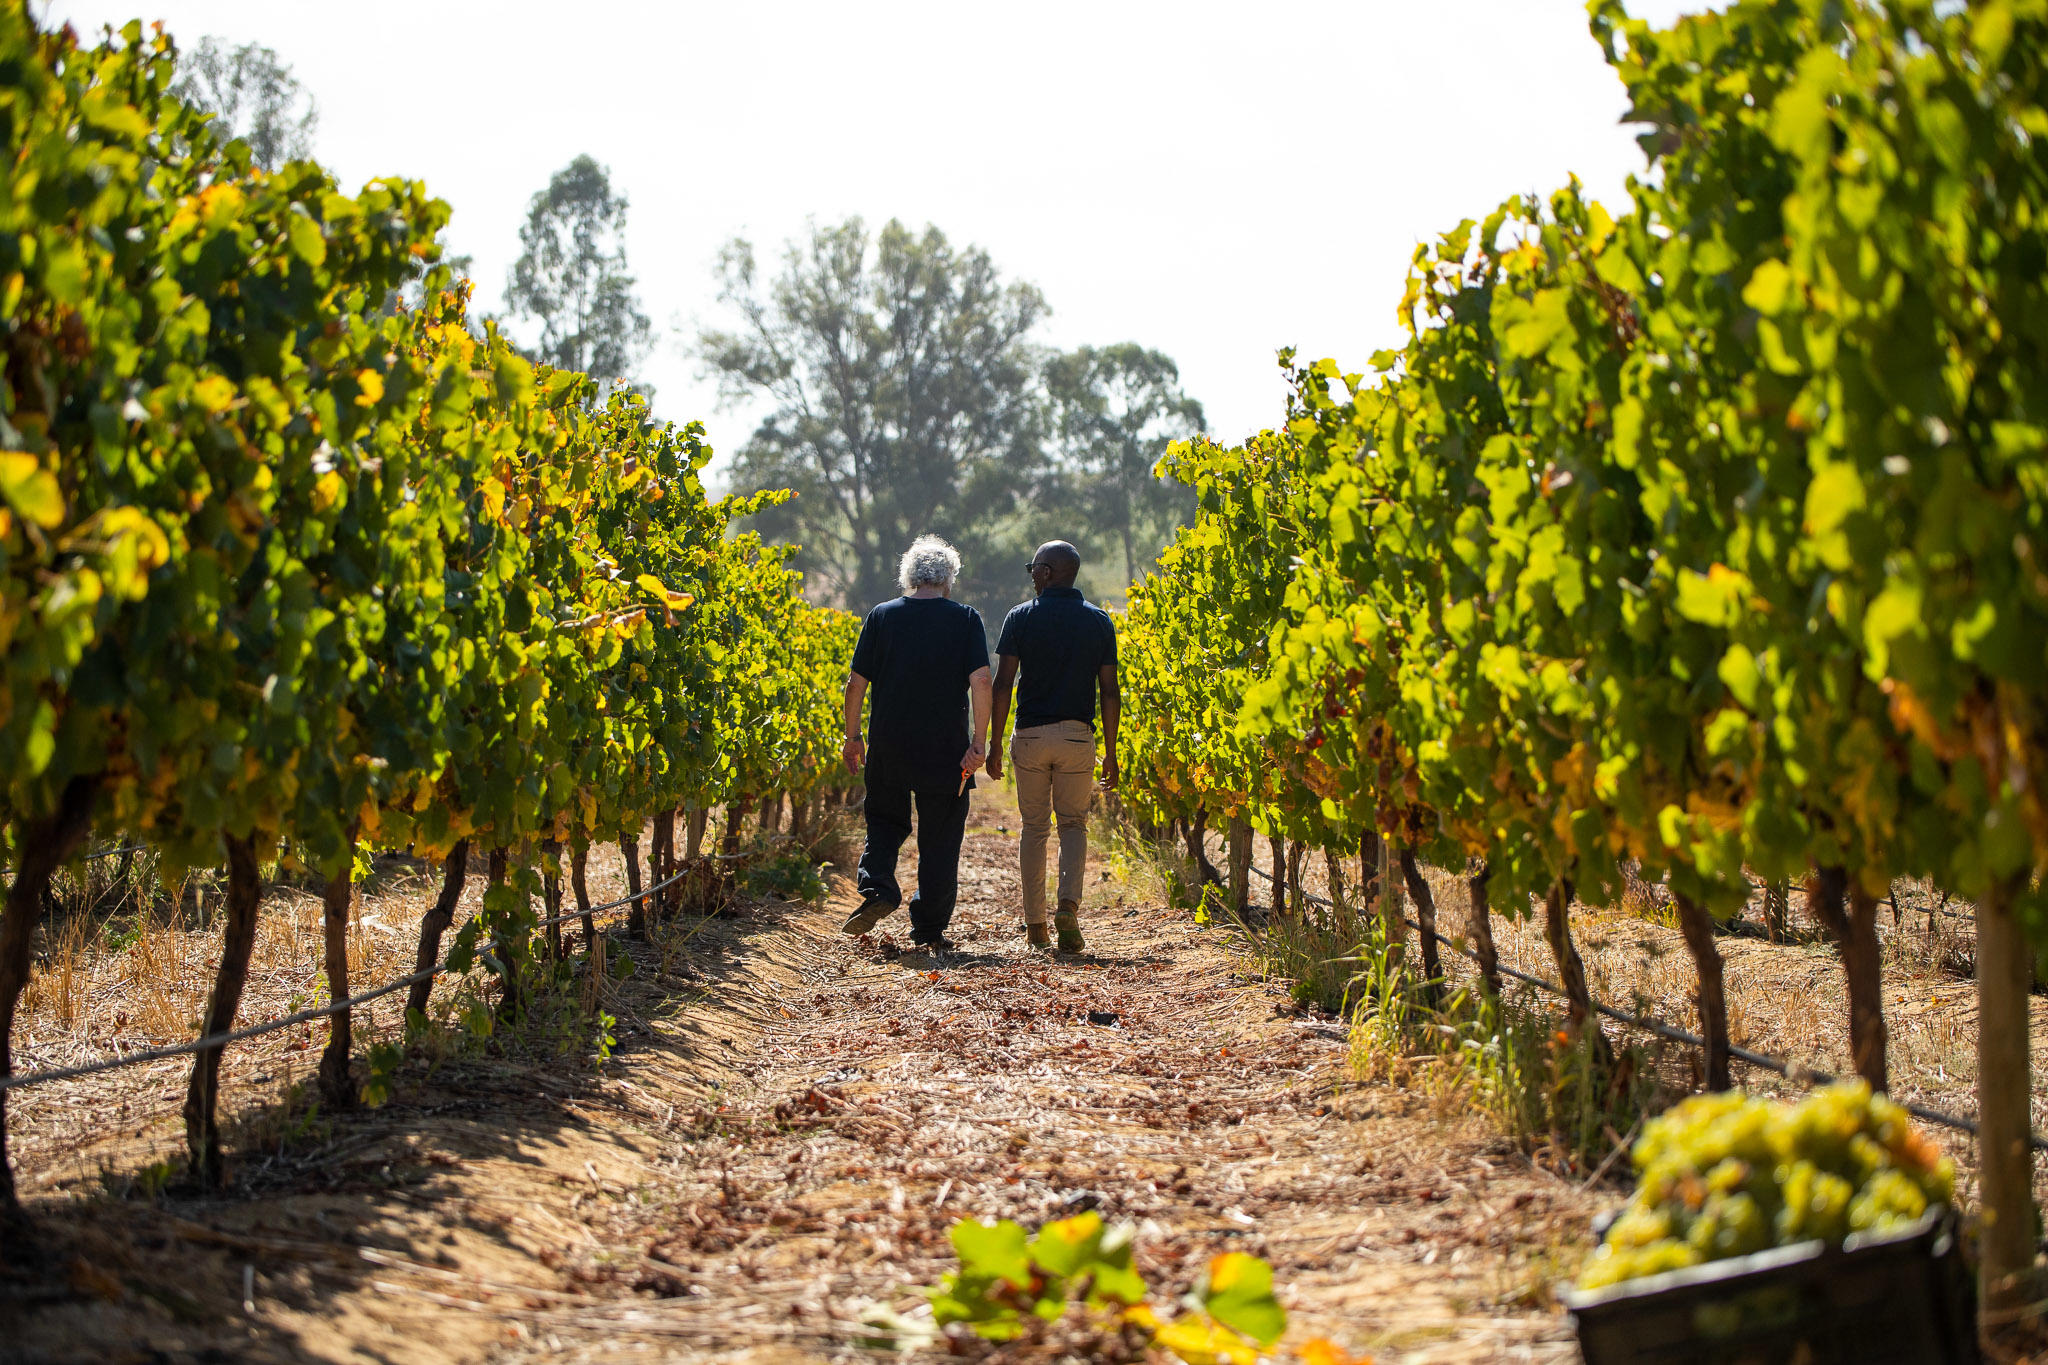 Two people walking through a vineyard